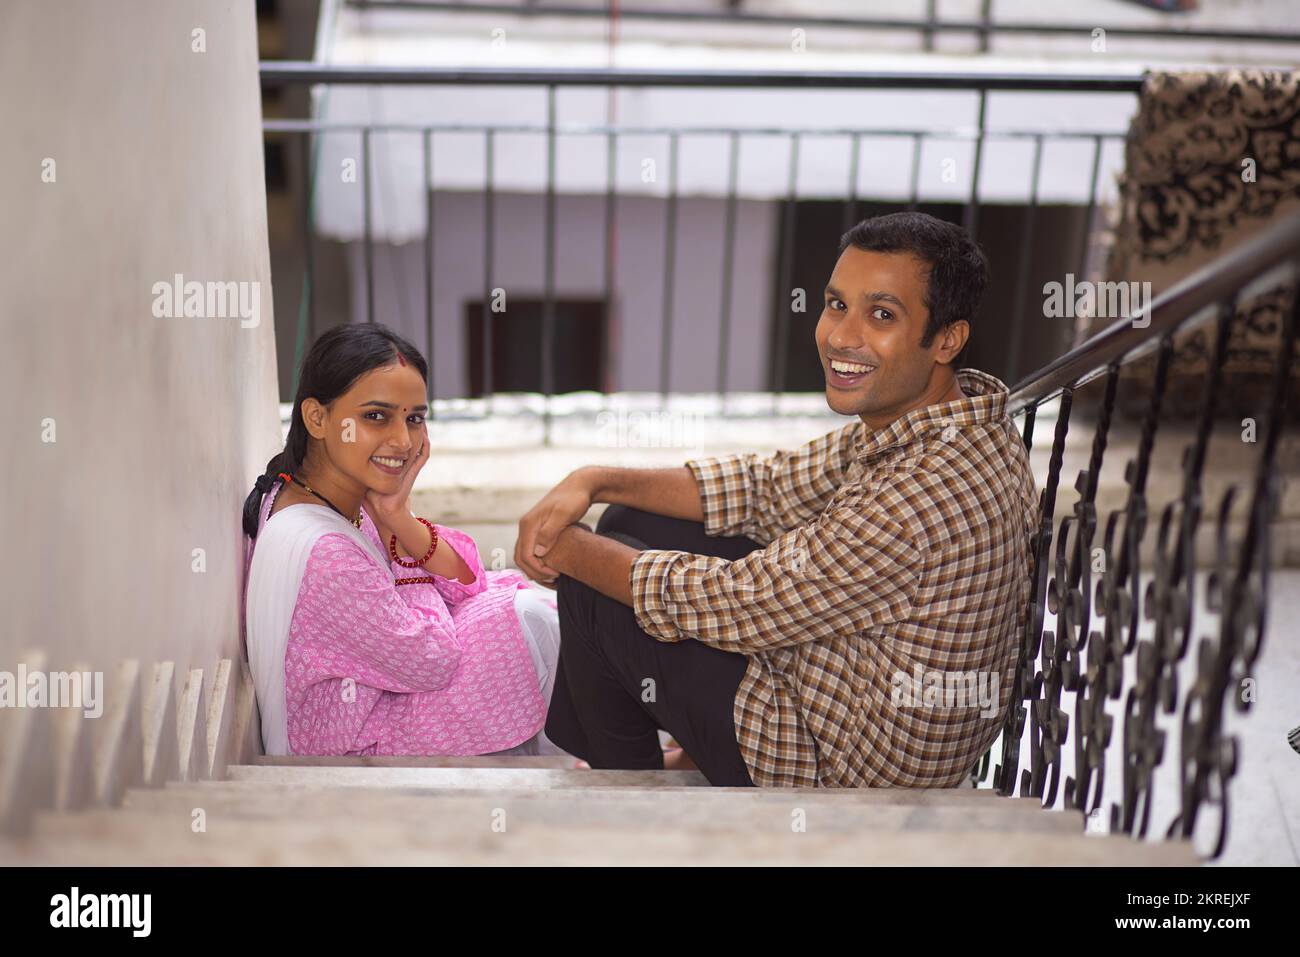 Vue en angle du dessus d'un jeune couple assis ensemble sur un escalier Banque D'Images